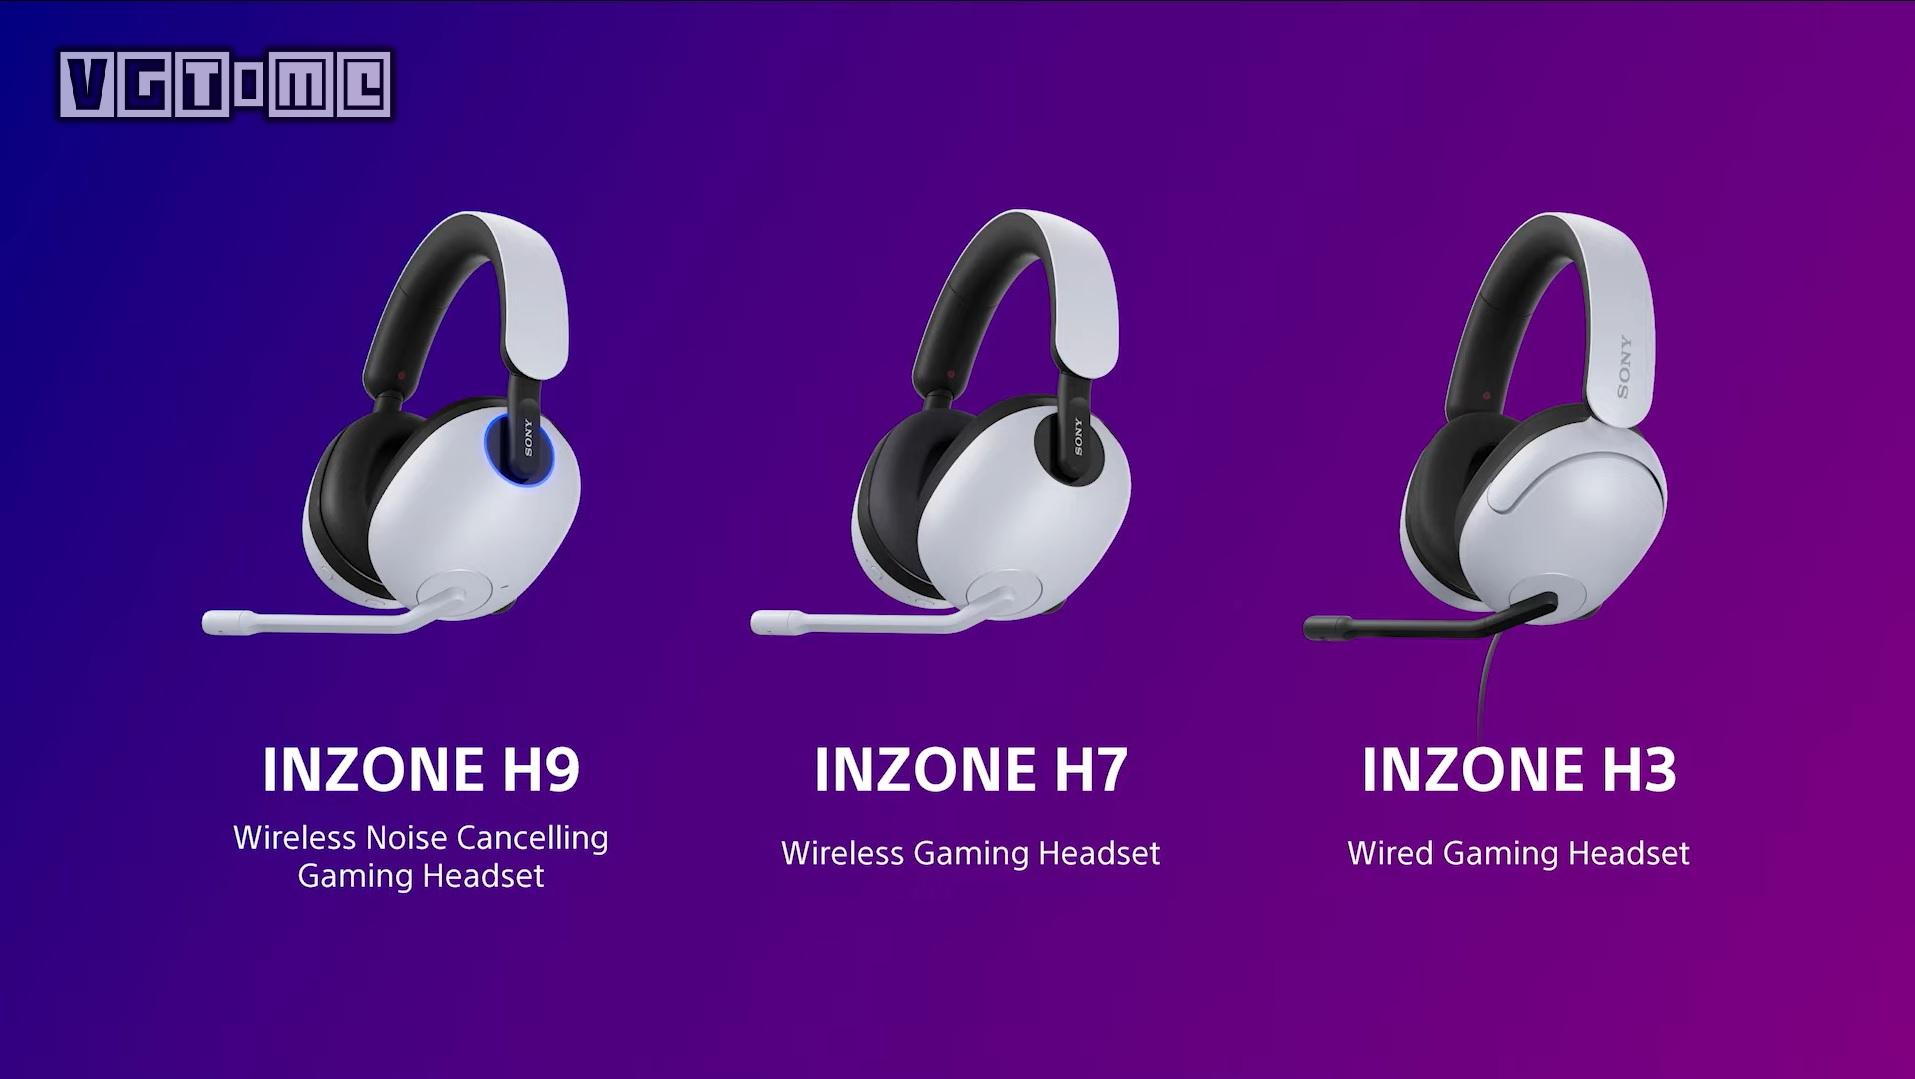 SONY遊戲外設「INZONE」系列顯示器、耳機新品介紹